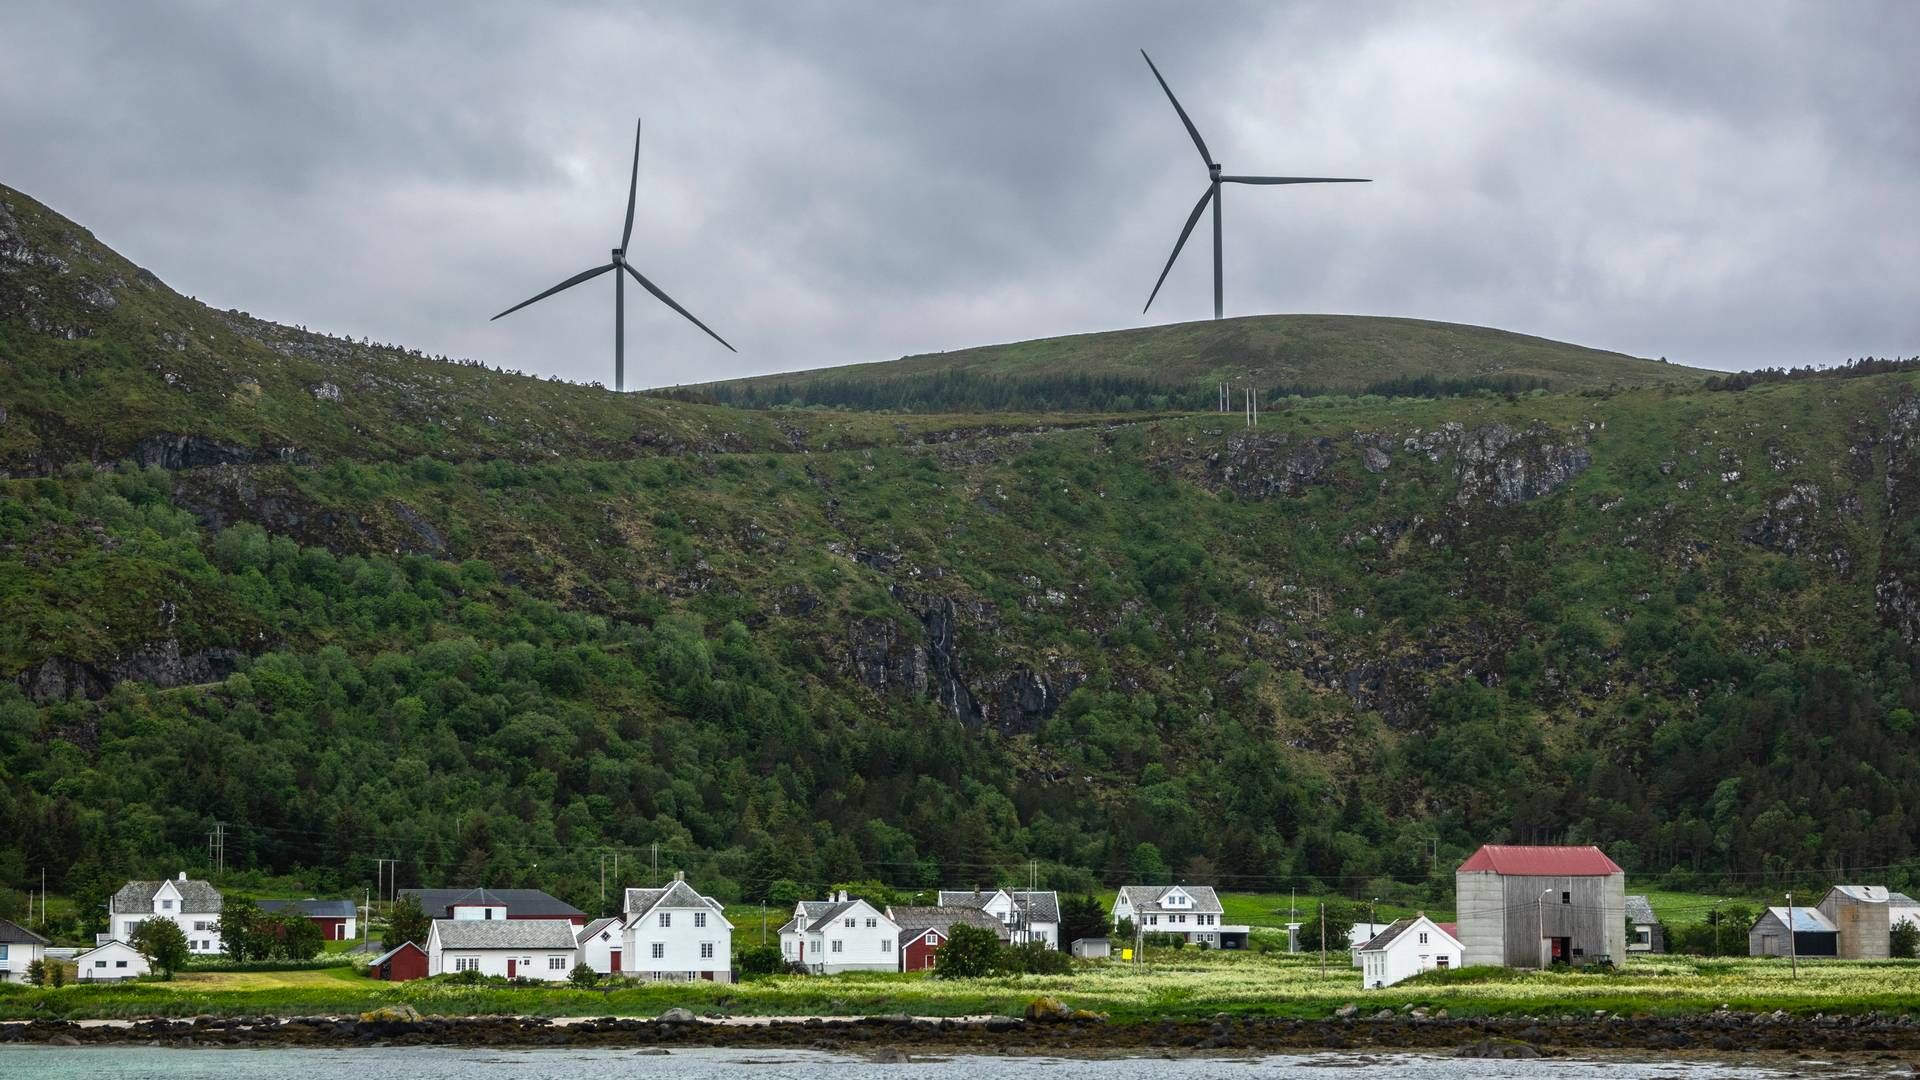 TO KOMMUNER: Nesten ingen kommuner har tatt kontakt med NVE for å få behandlet søknader om vindkraft. | Foto: Halvard Alvik / NTB